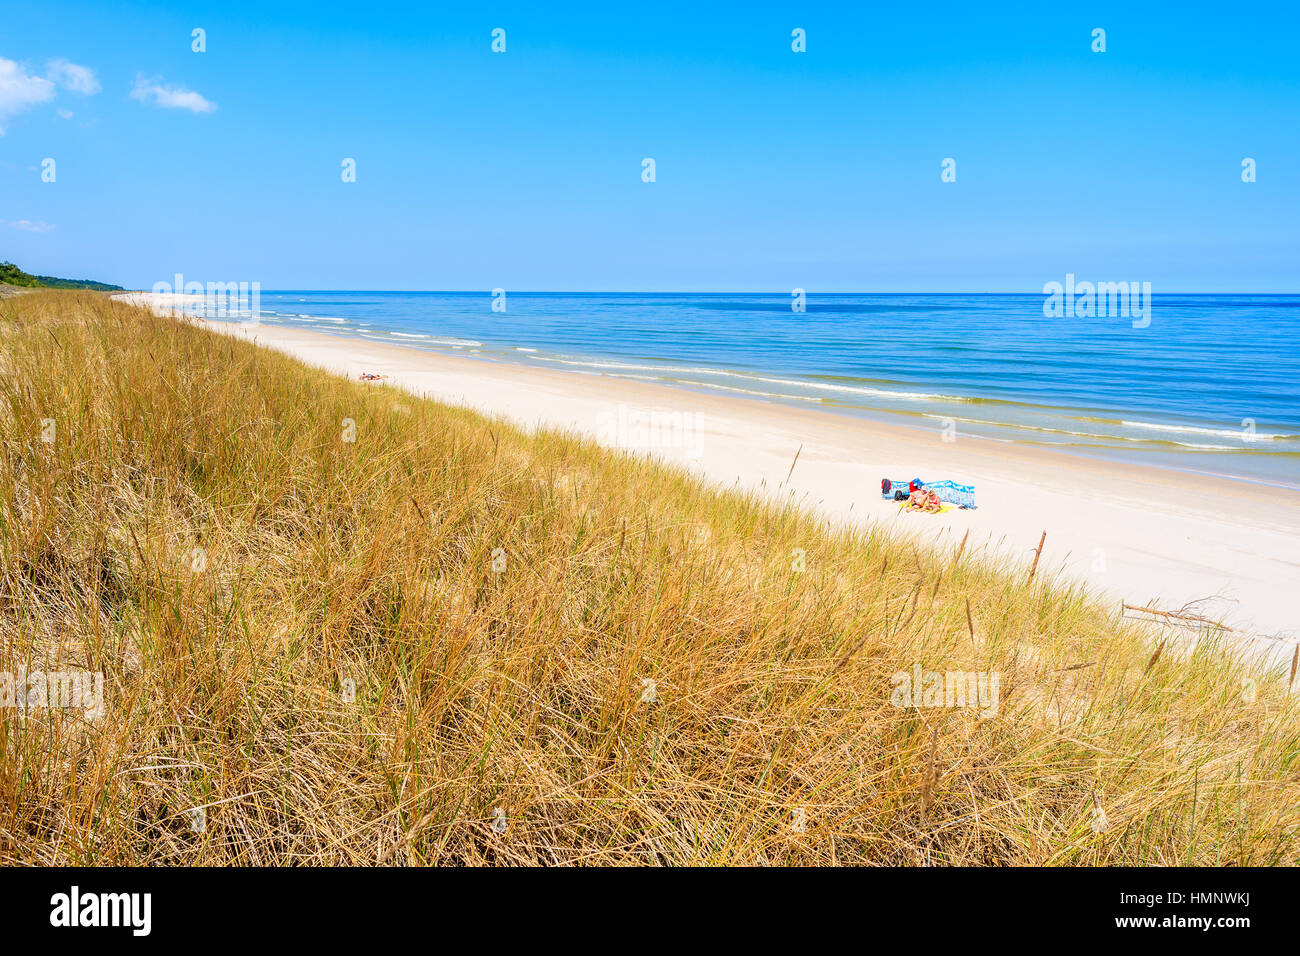 Dunes de sable et d'herbe en vue de la plage de la mer Baltique, Lubiatowo, Pologne Banque D'Images